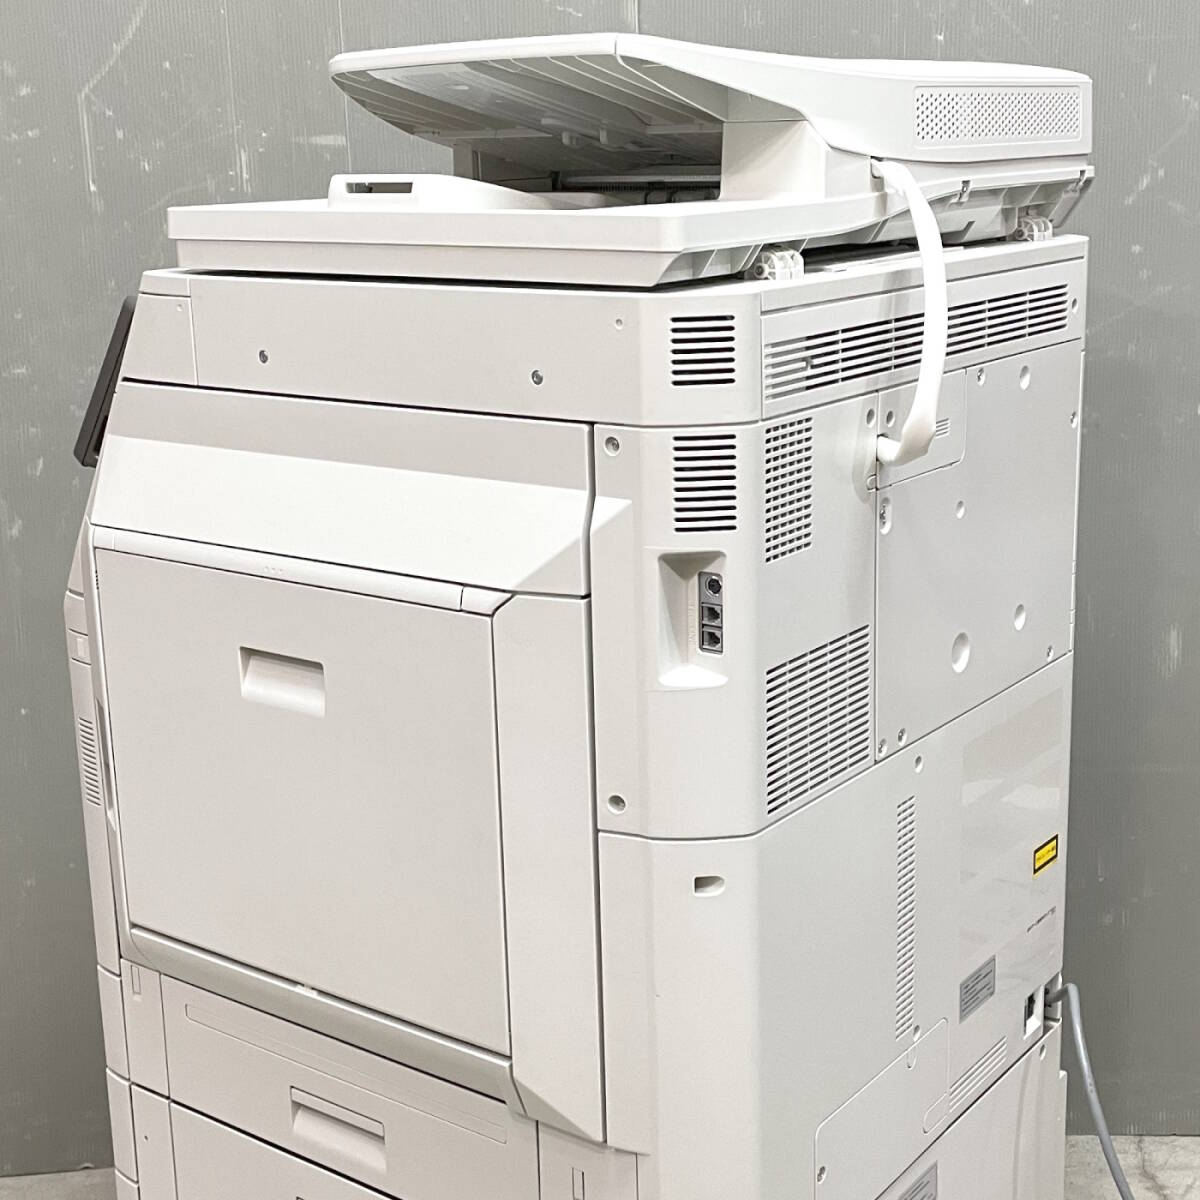 2,548 листов ( цвет ) 2,882 листов ( белый чёрный ) тонер полный оборот sharp полный цветная многофункциональная машина MX-2631 копирование FAX принтер сканер для бизнеса 